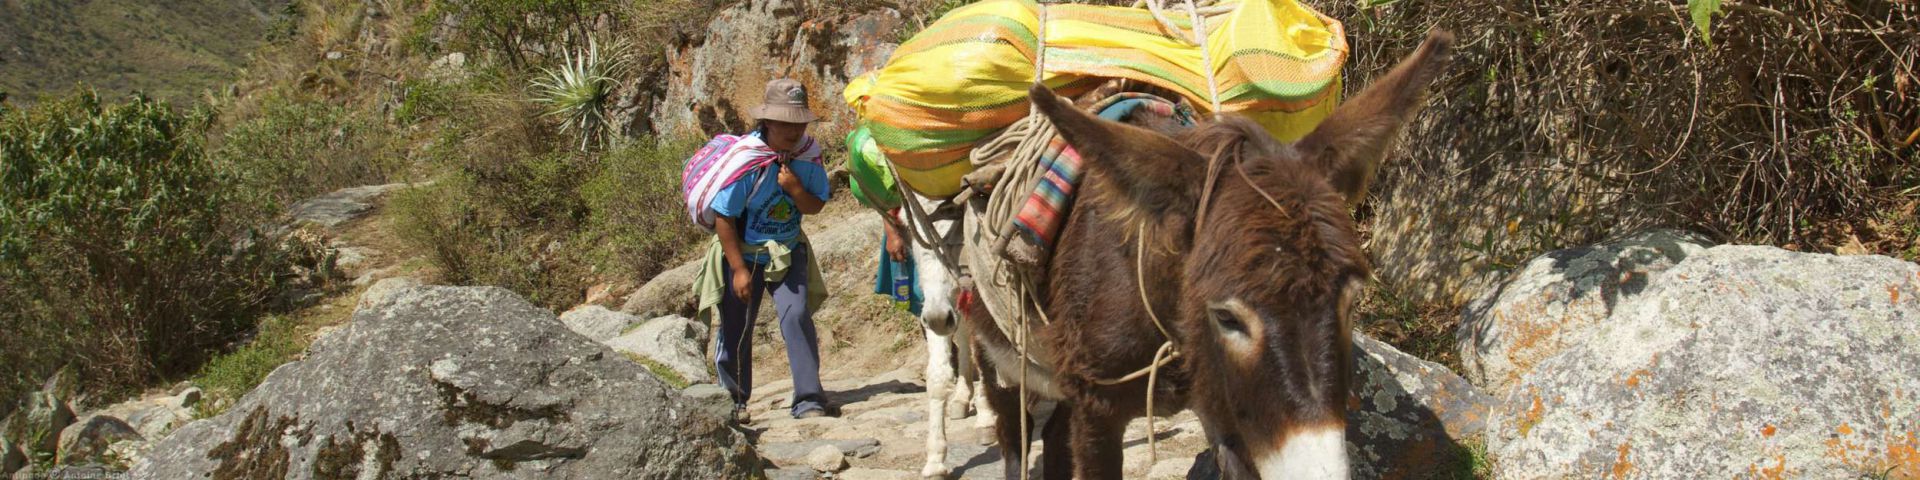 Inca Trail | MachuPicchu